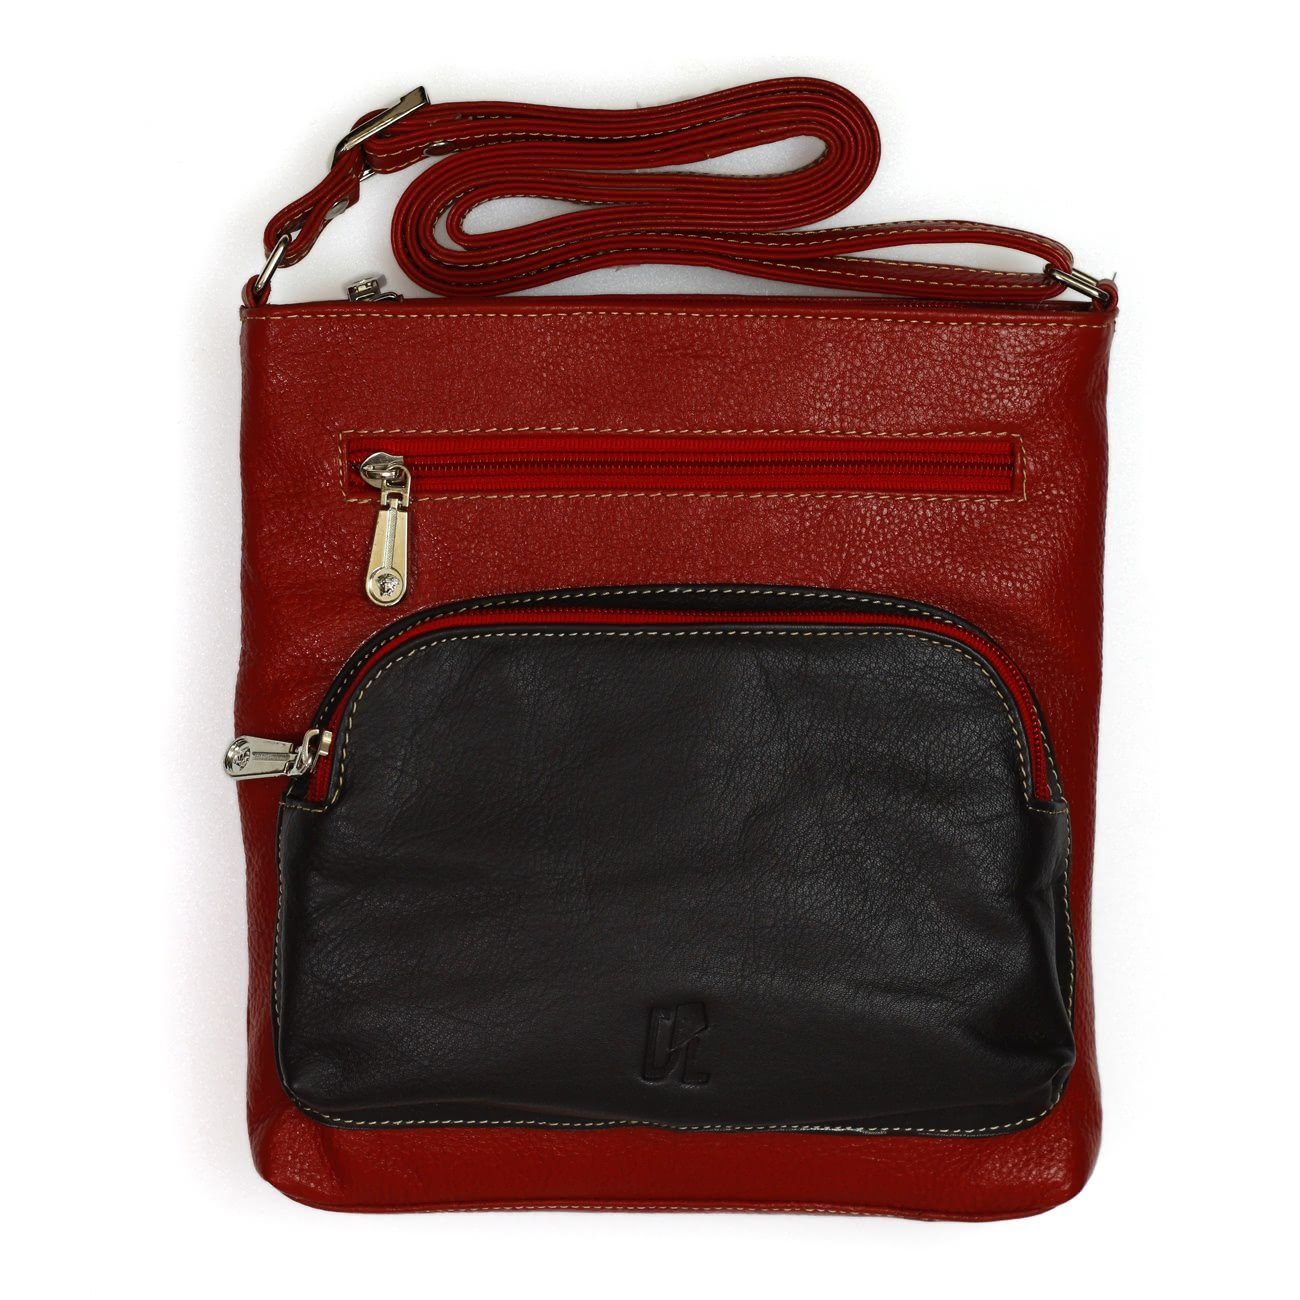 DrachenLeder Handtasche + Geldbörse Geldbörse Umhängetasche rot, 2-tlg), Leder rot Set Handtasche, schwarz (Handtasche, Echtleder